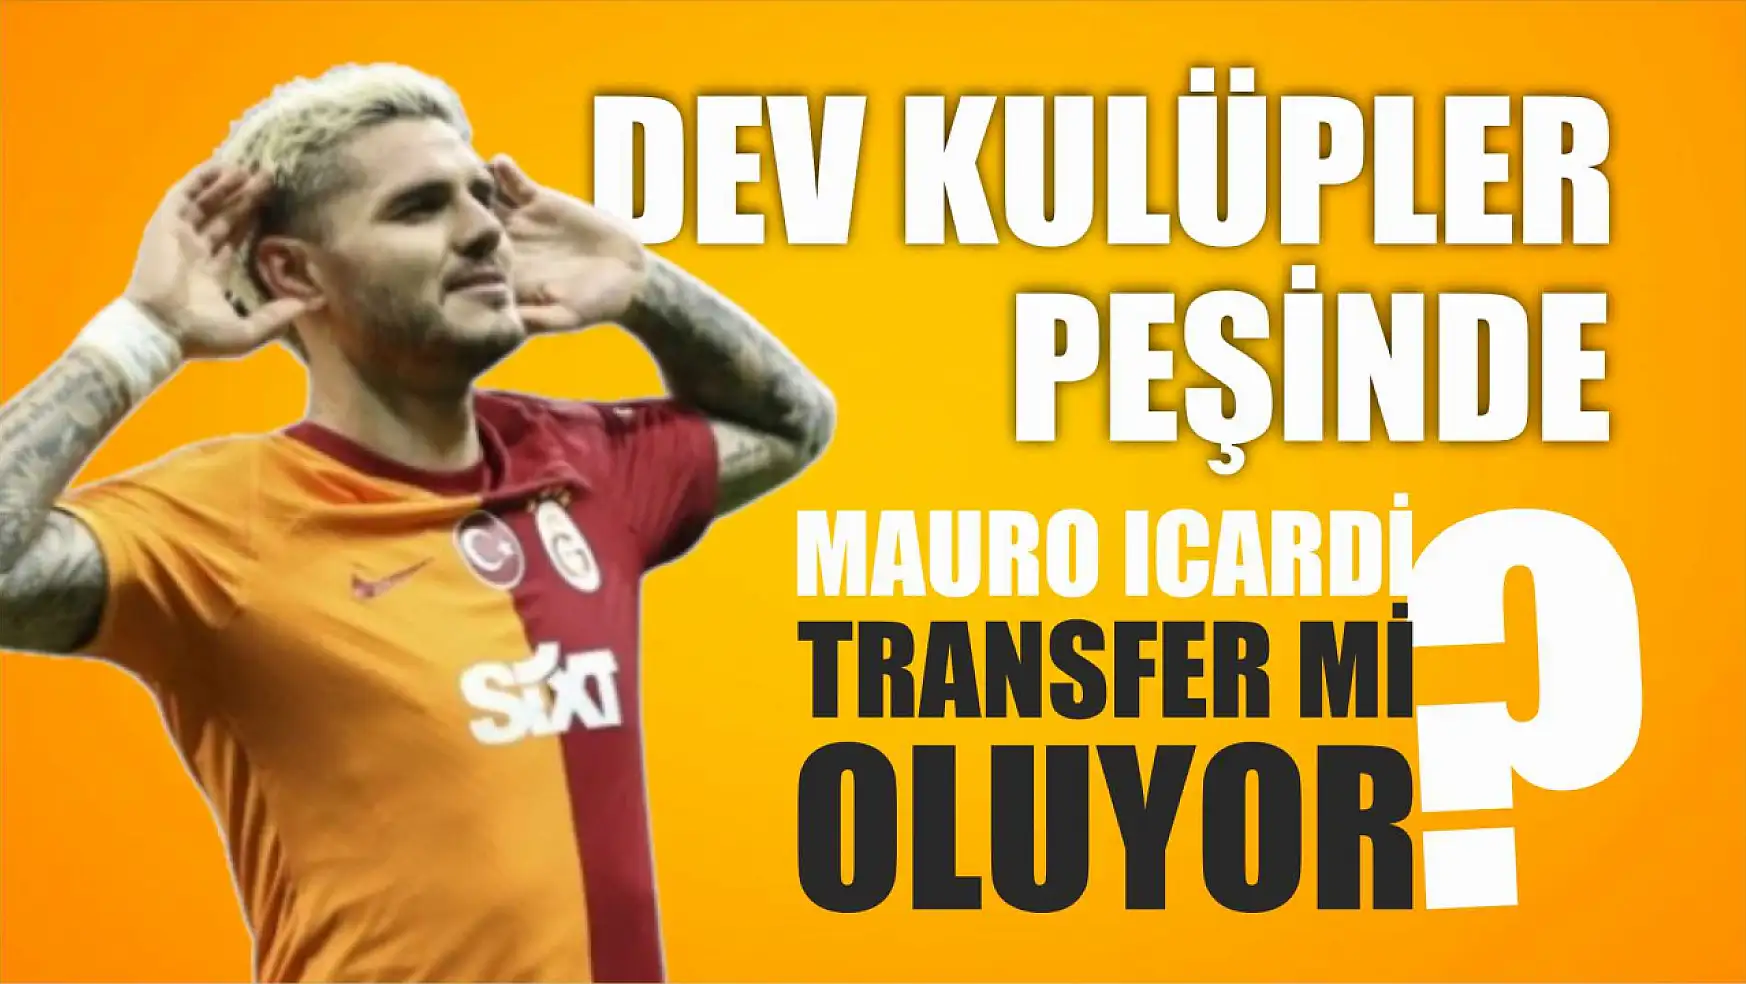 Mauro Icardi transfer mi oluyor? Dev kulüpler peşinde